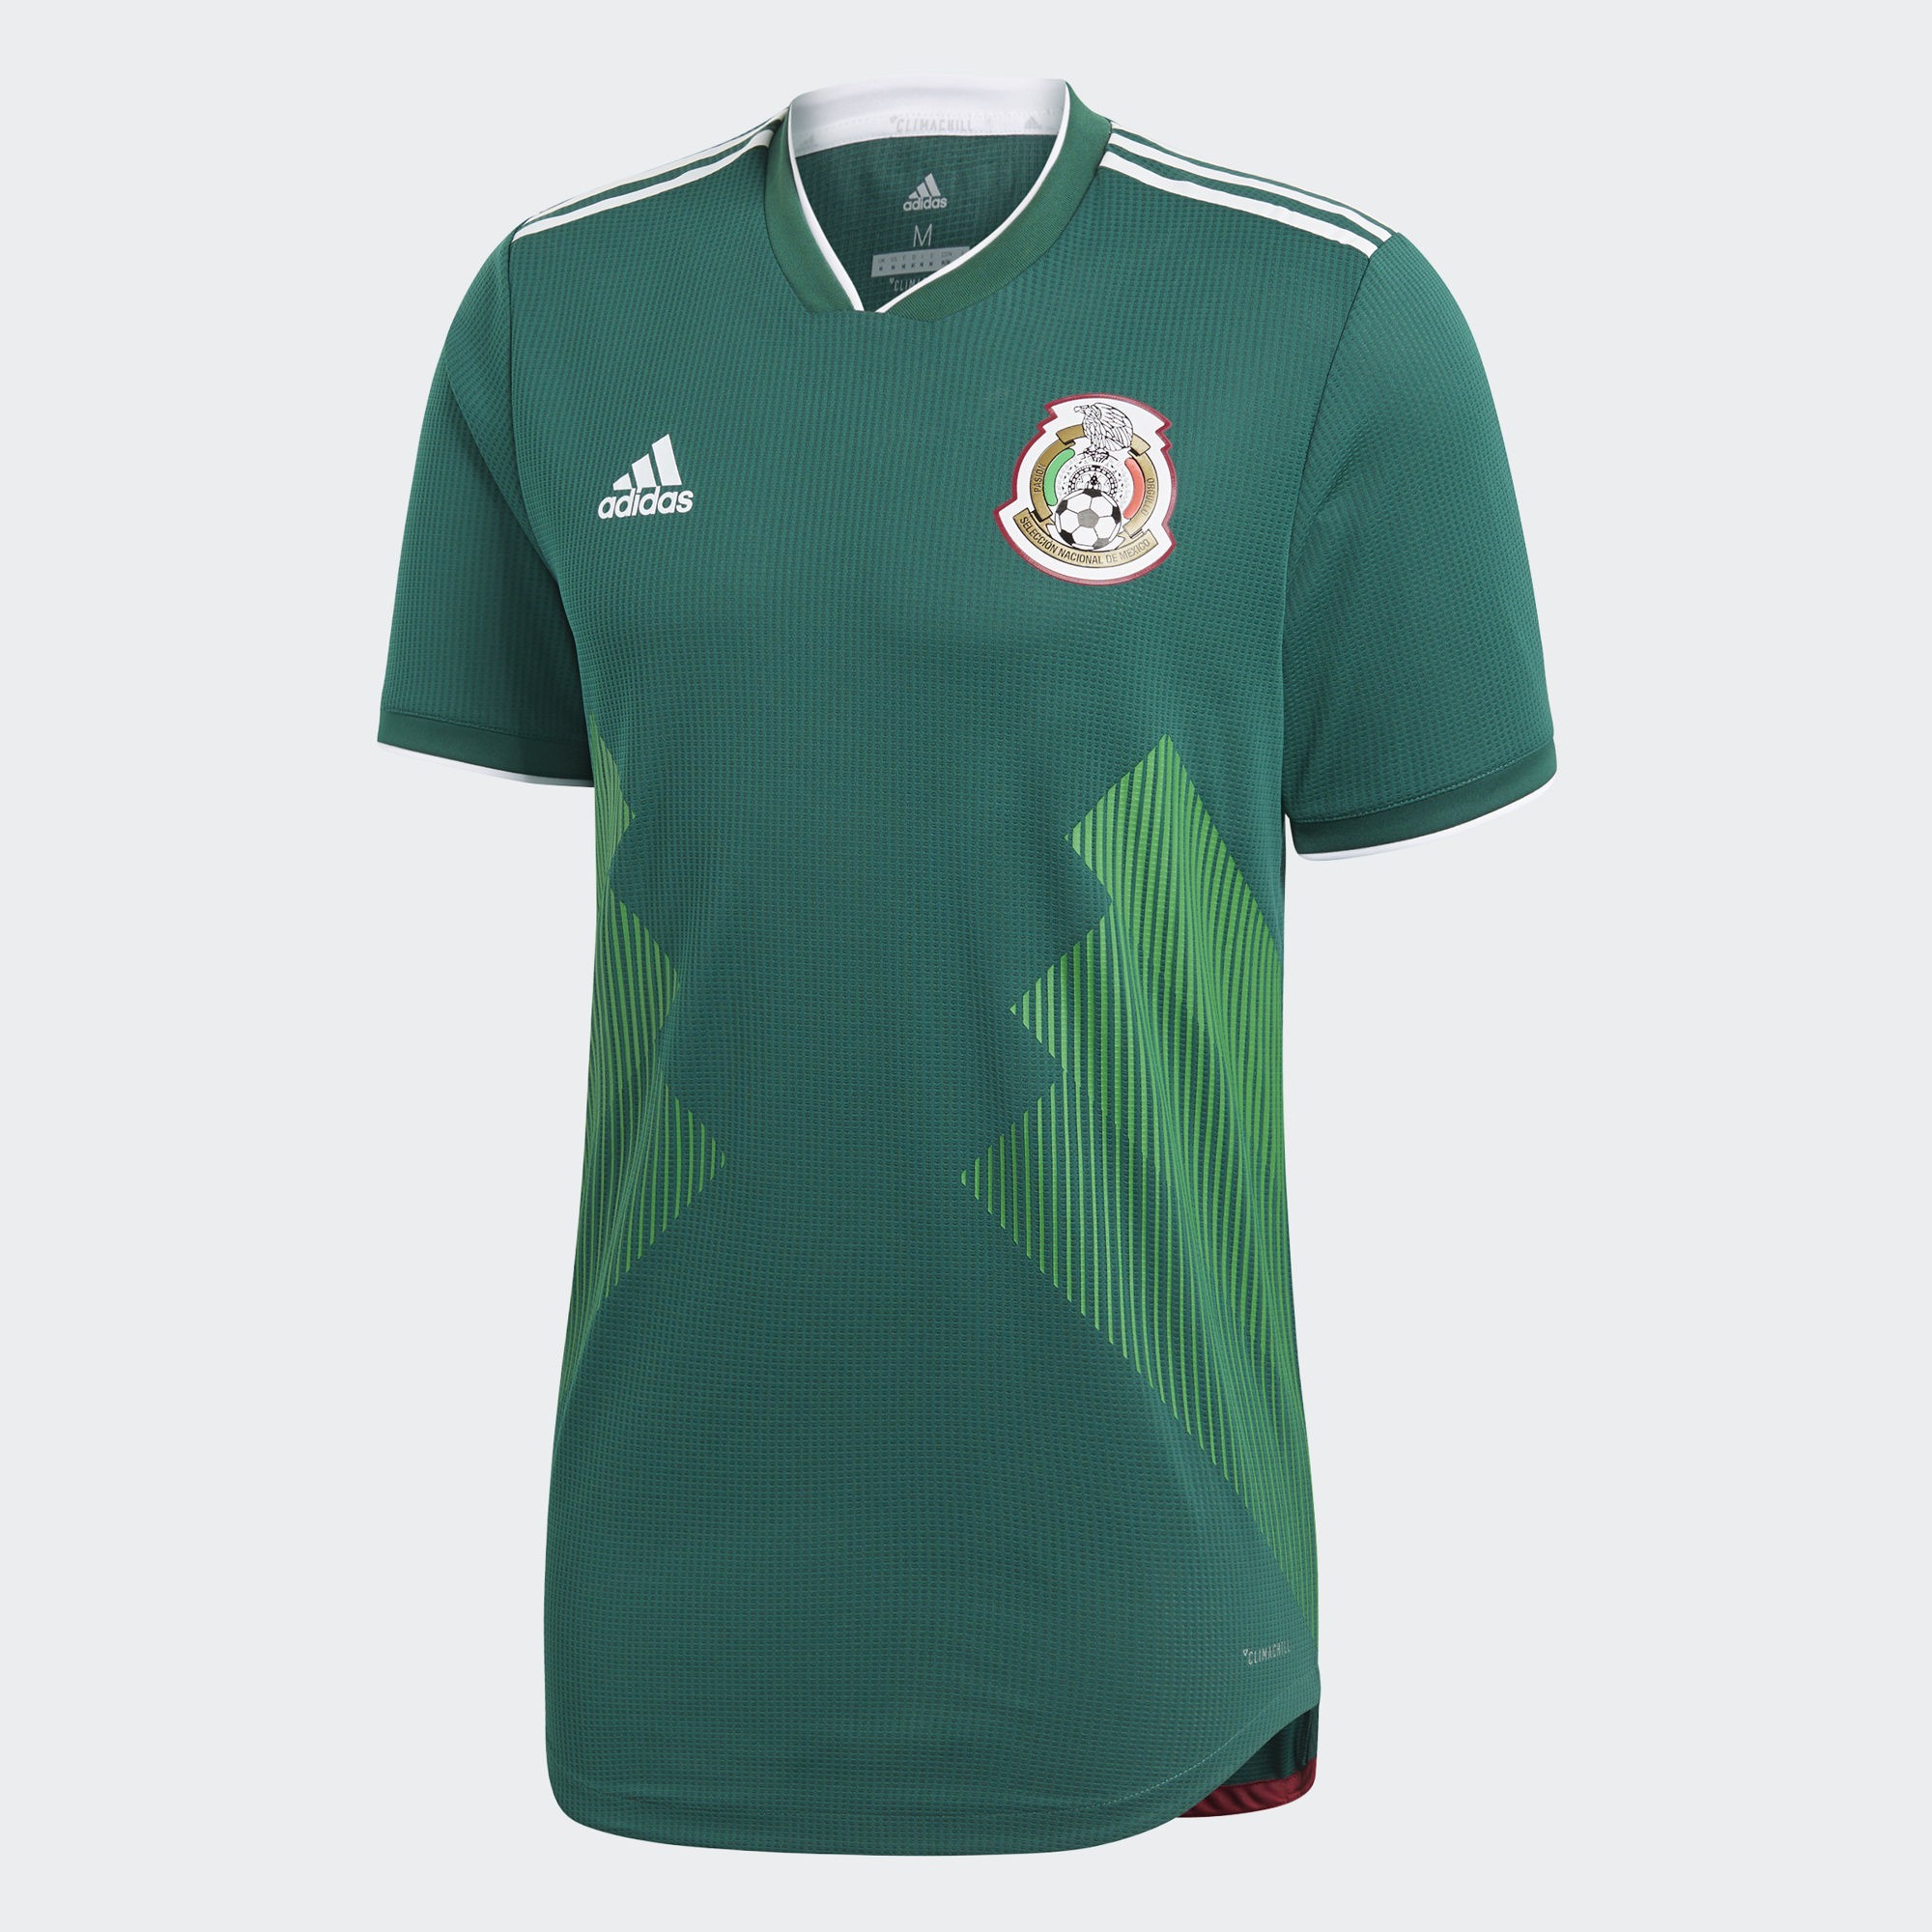 雄鹰展翅!墨西哥国家队2018球衣发布!